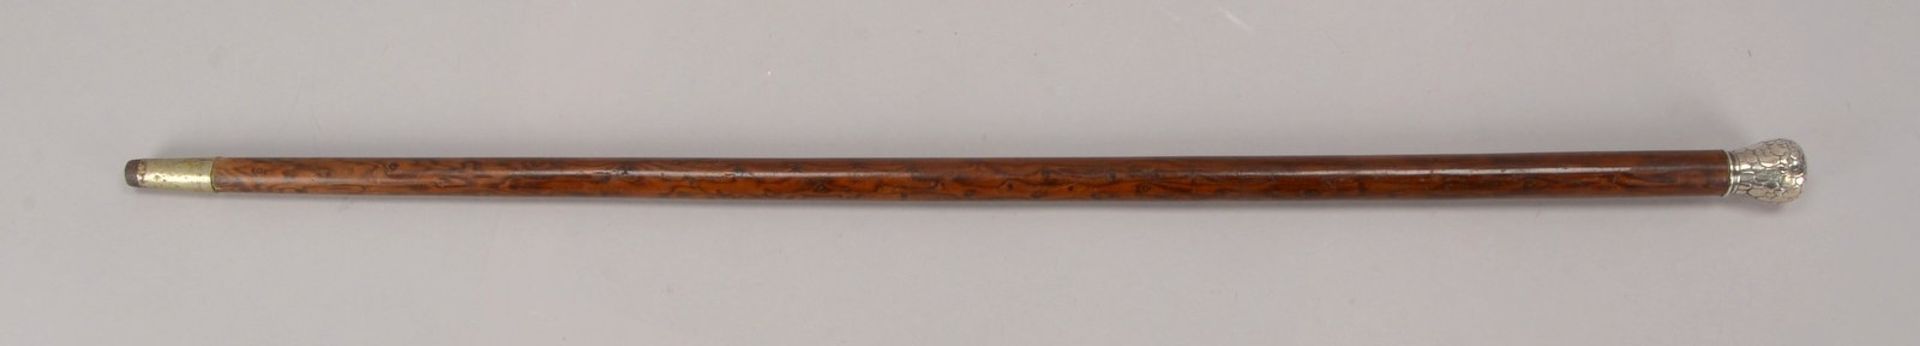 Gehstock, Knauf 800 Silber; Länge 86,2 cm